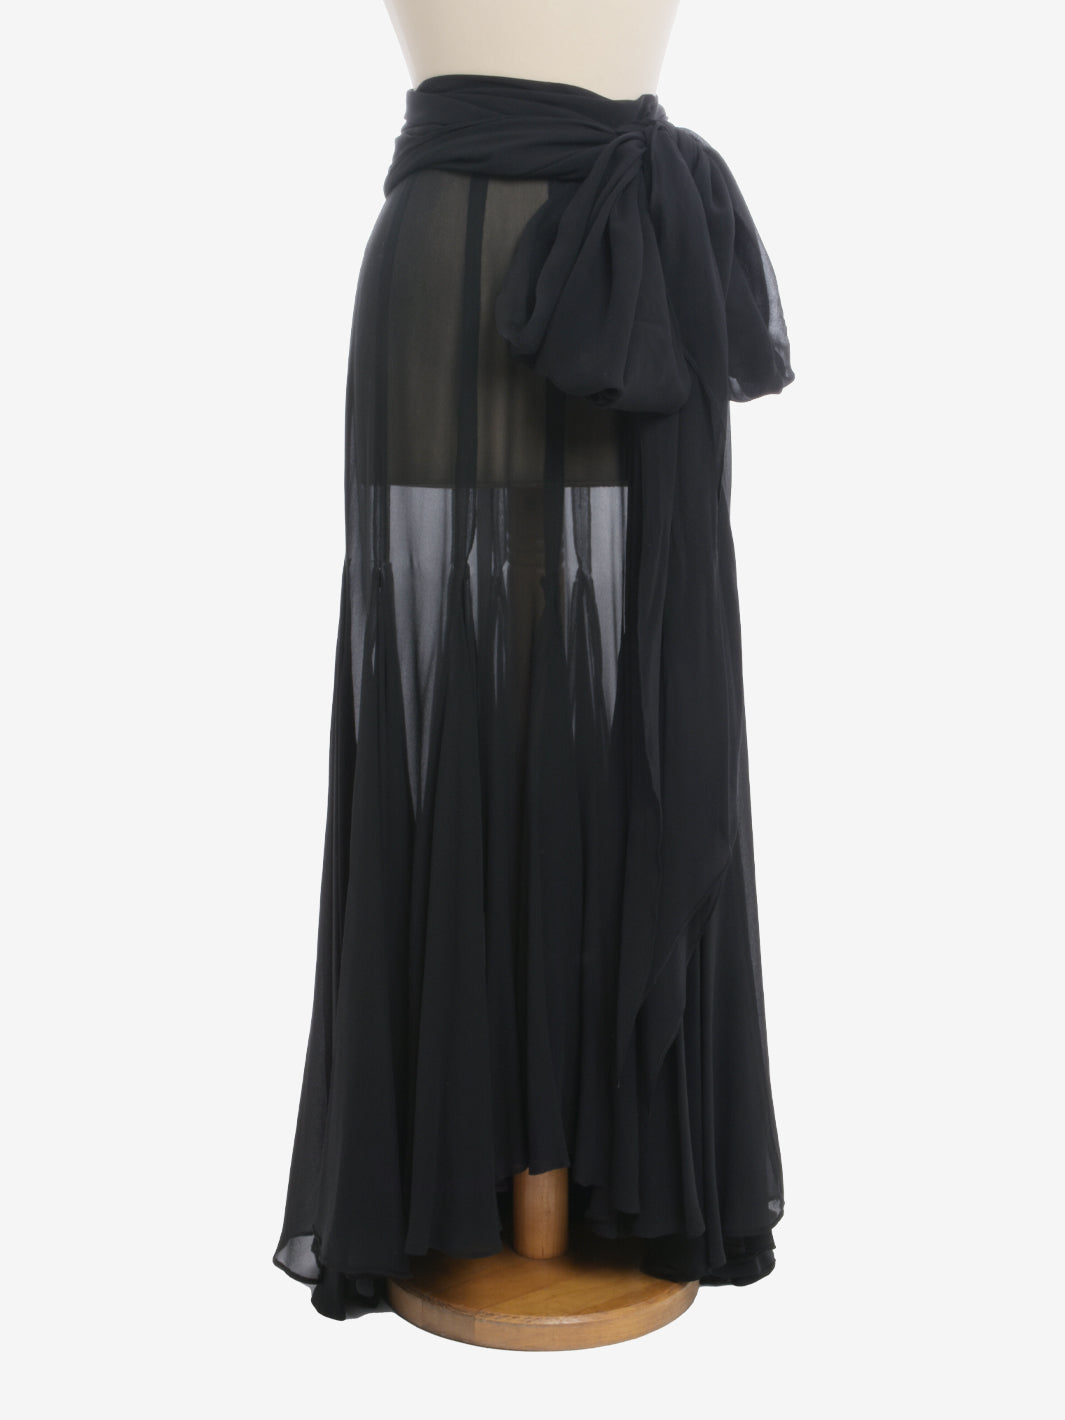 Gianfranco Ferré Chiffon Skirt With Shawl - 80s